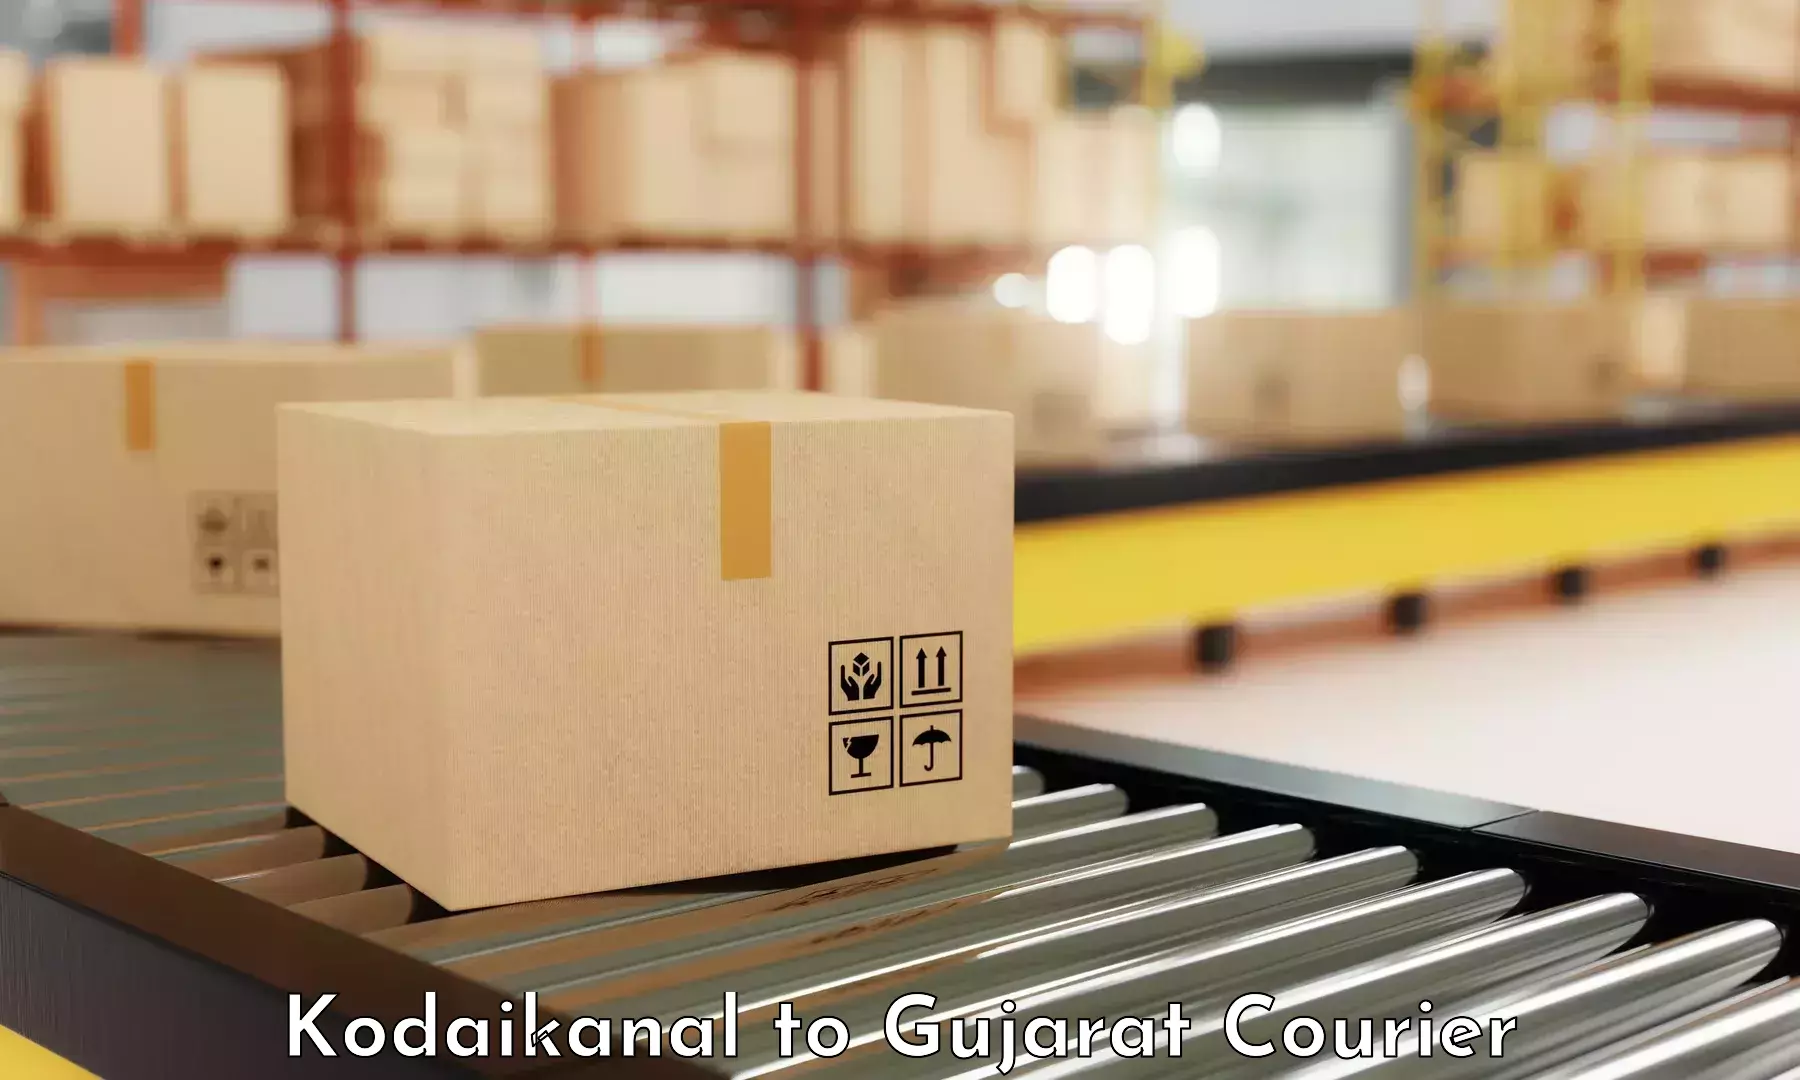 Cost-effective courier options Kodaikanal to Visavadar